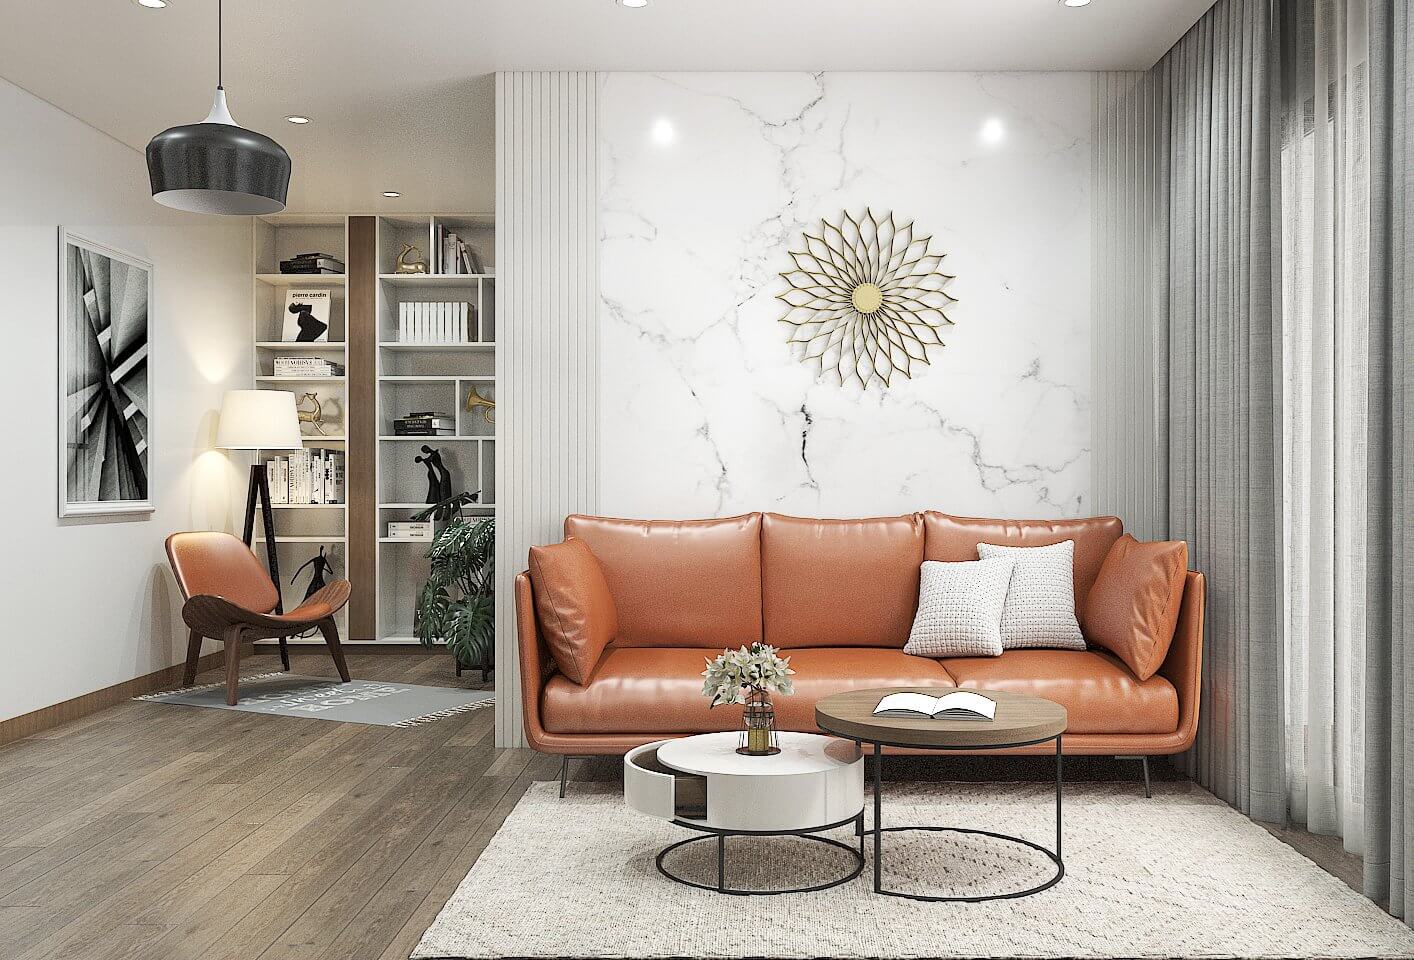 Không gian phòng khách được bày trí với đồ nội thất đơn giản như ghế sofa và bàn trà nhưng vẫn không kém phần sang trọng